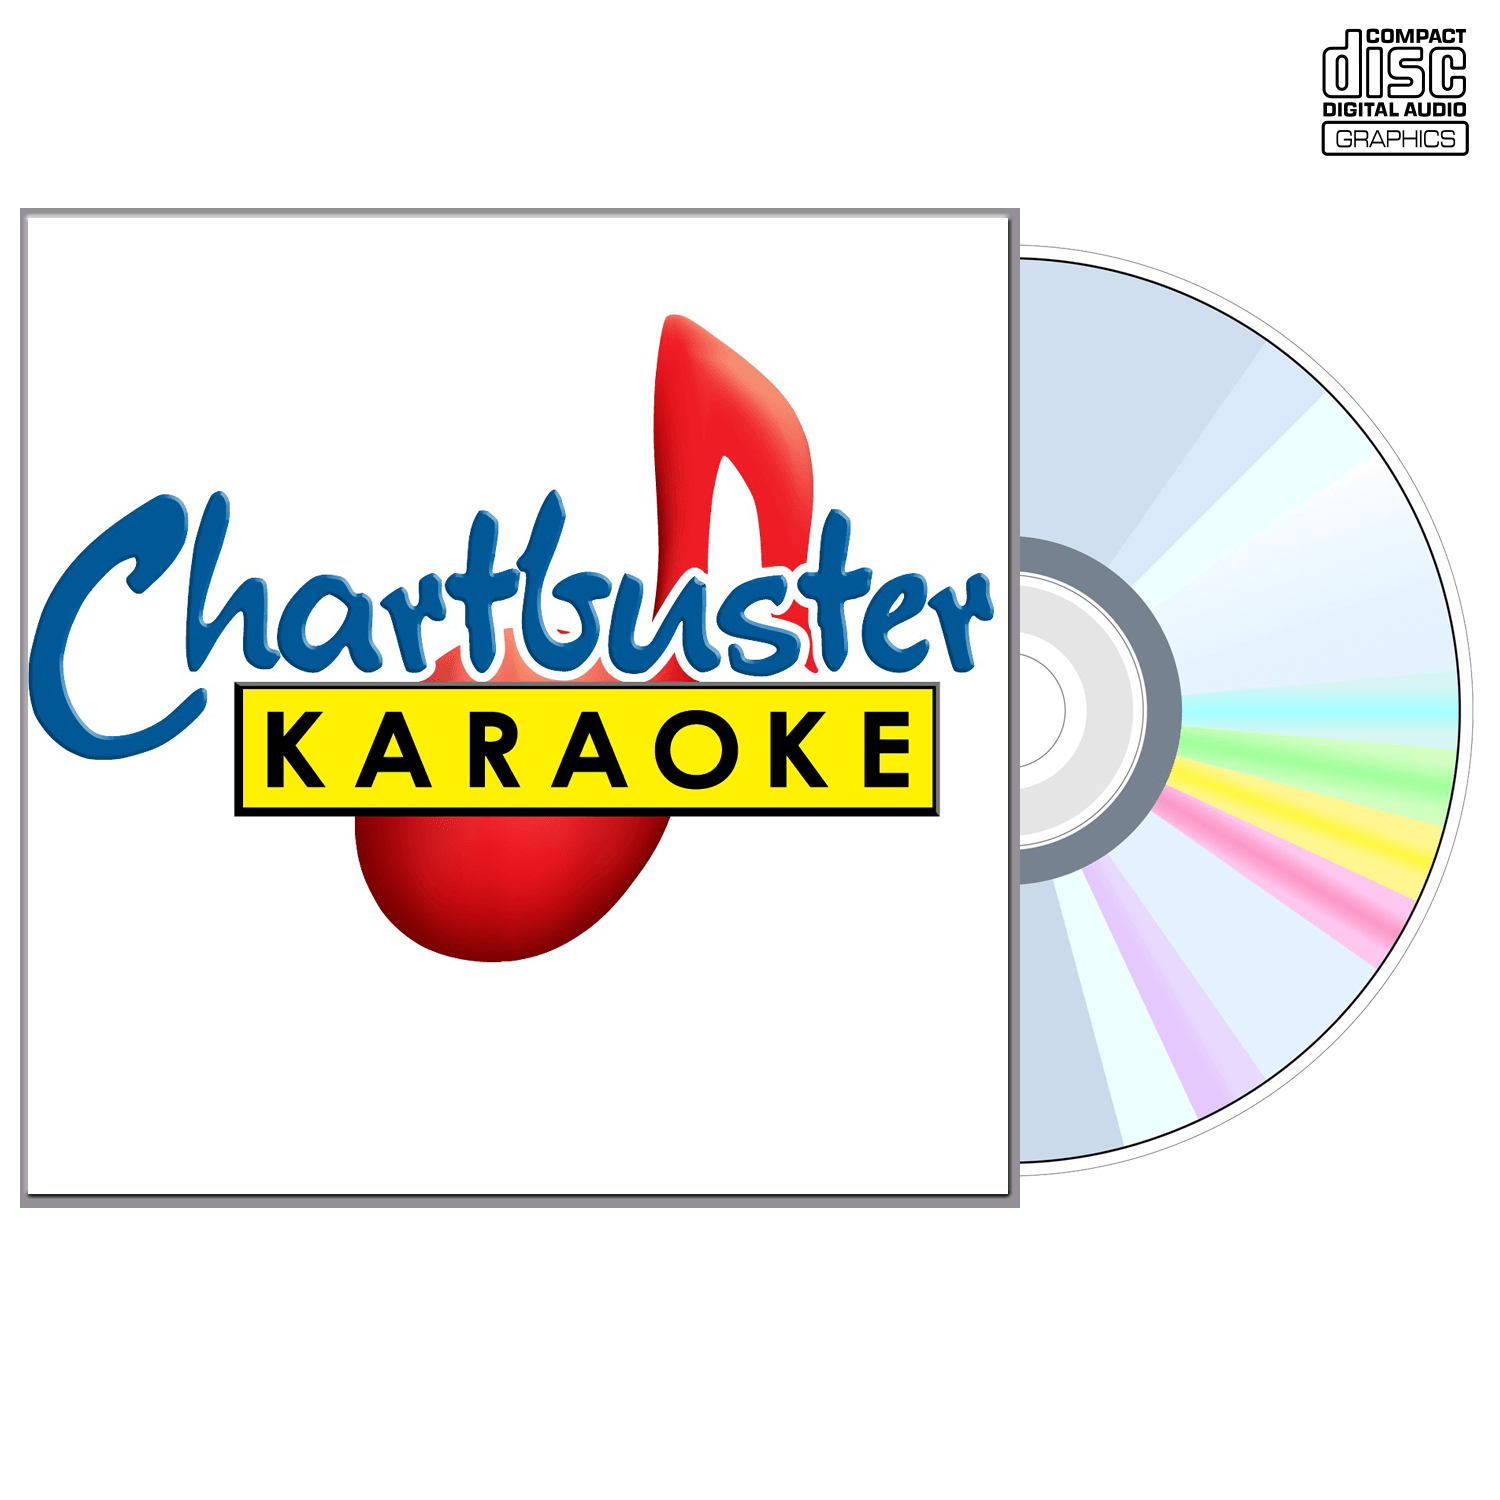 The Calling - CD+G - Chartbuster Karaoke - Karaoke Home Entertainment